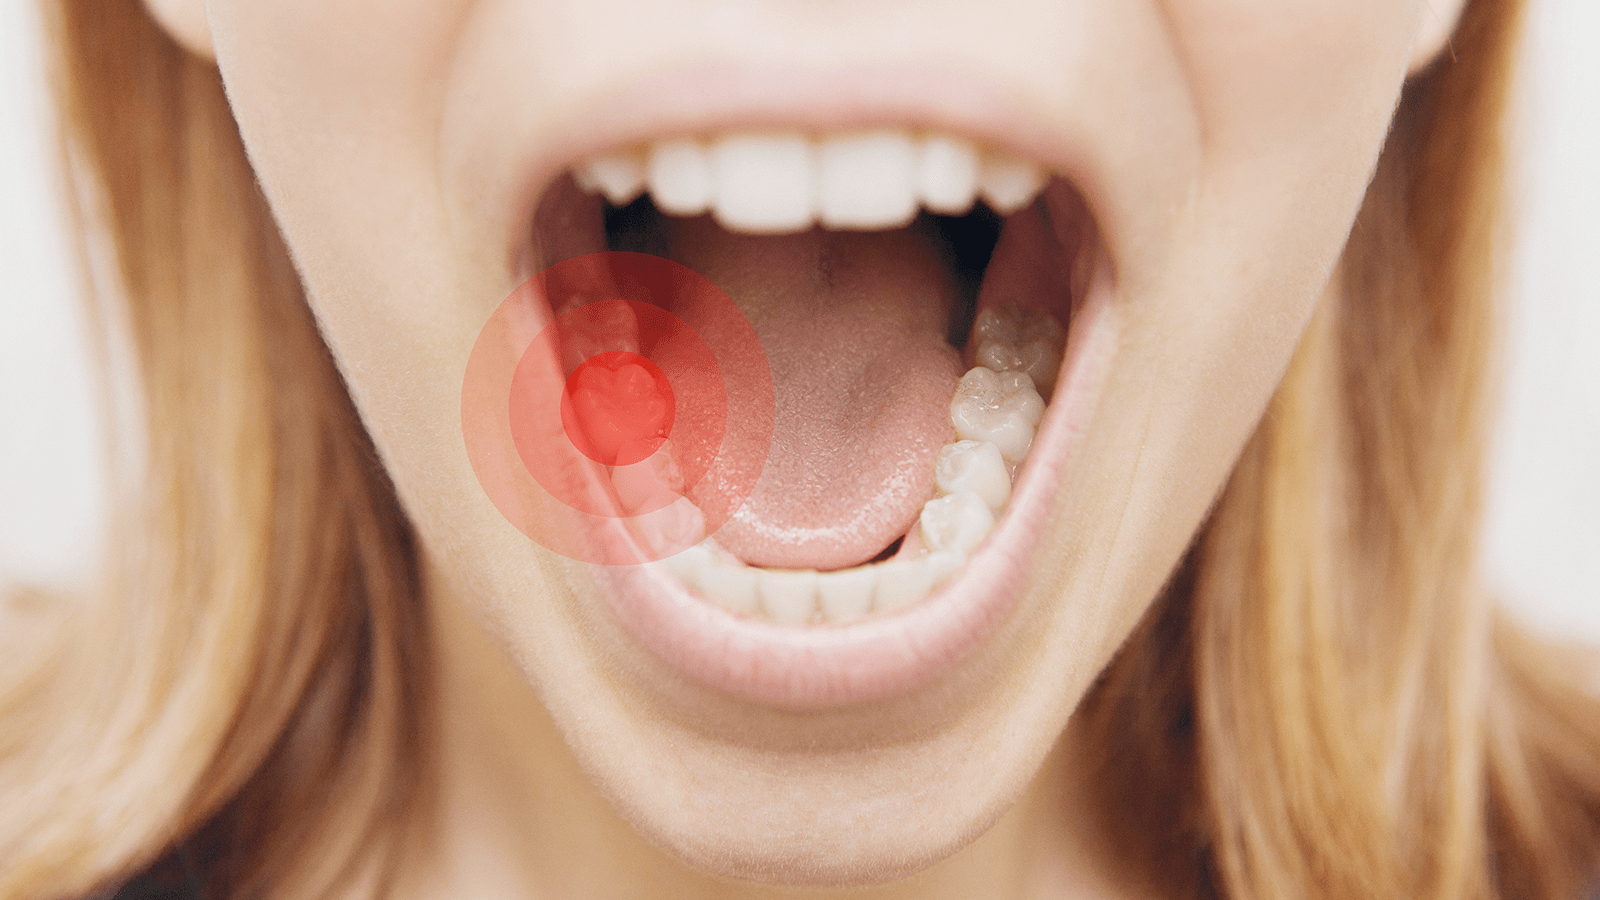 عامل خطرساز برای دندان